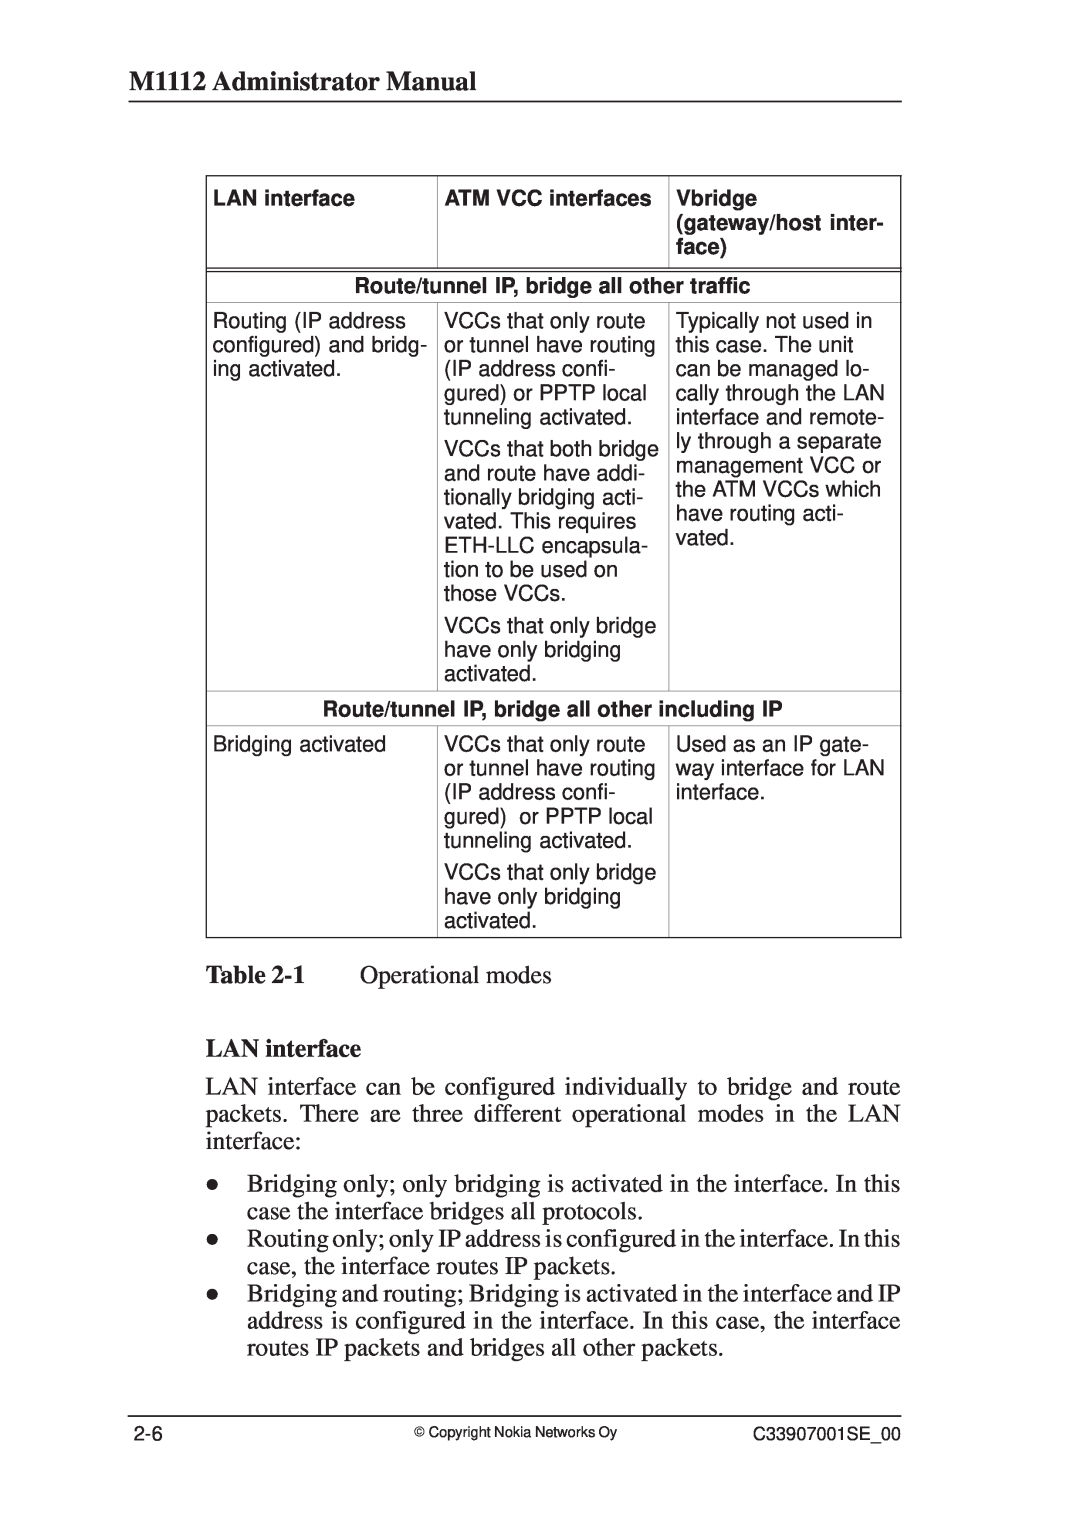 Nokia manual M1112 Administrator Manual, LAN interface 